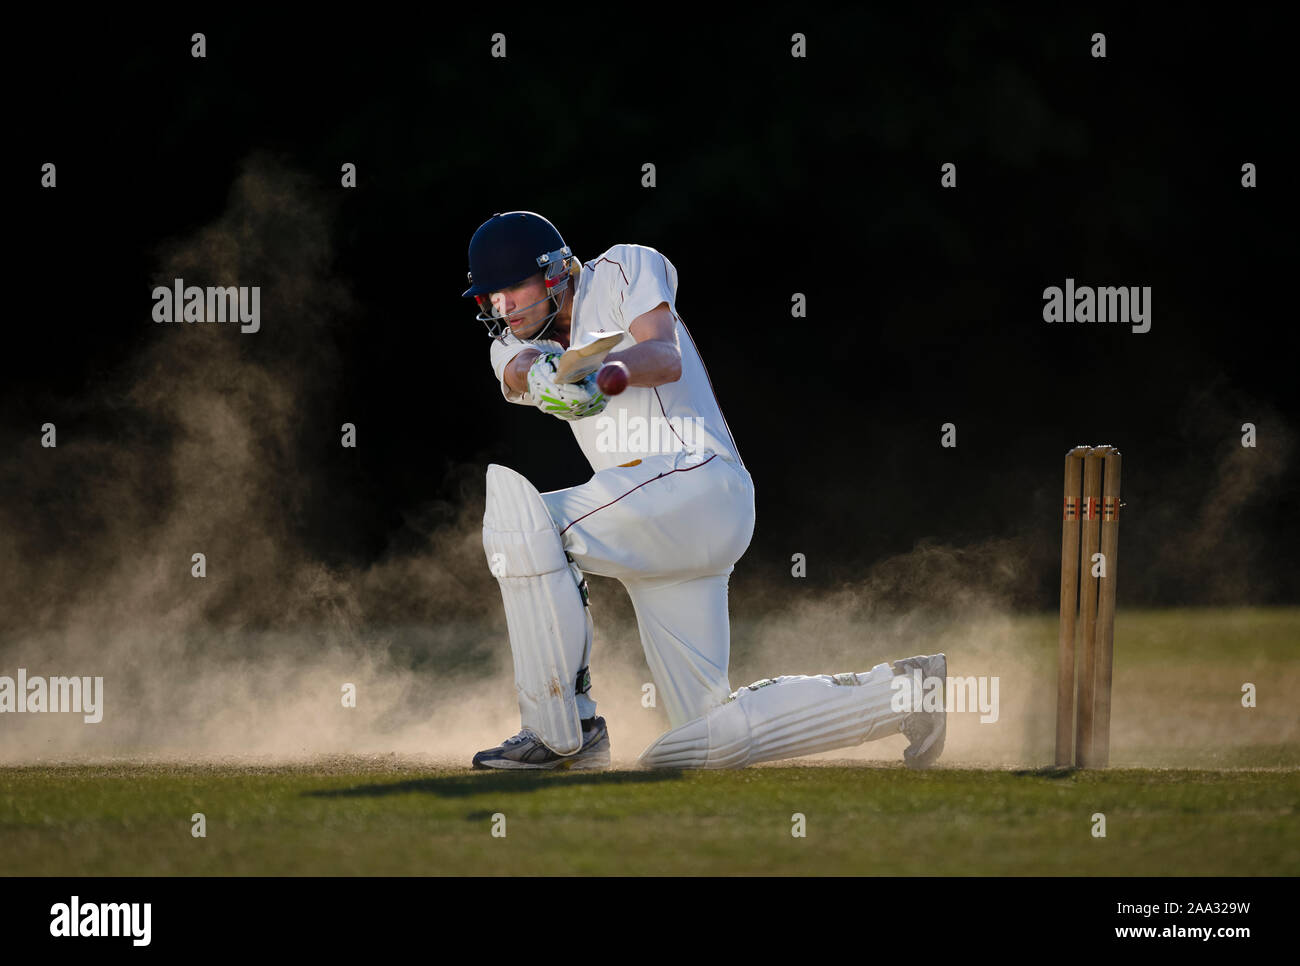 Kricket batsman Simon eilte Spielen sweep Schuß auf trockenen, staubigen Wicket - Dorset - England. Model Released für kommerzielle und redaktionelle Verwendung. Stockfoto